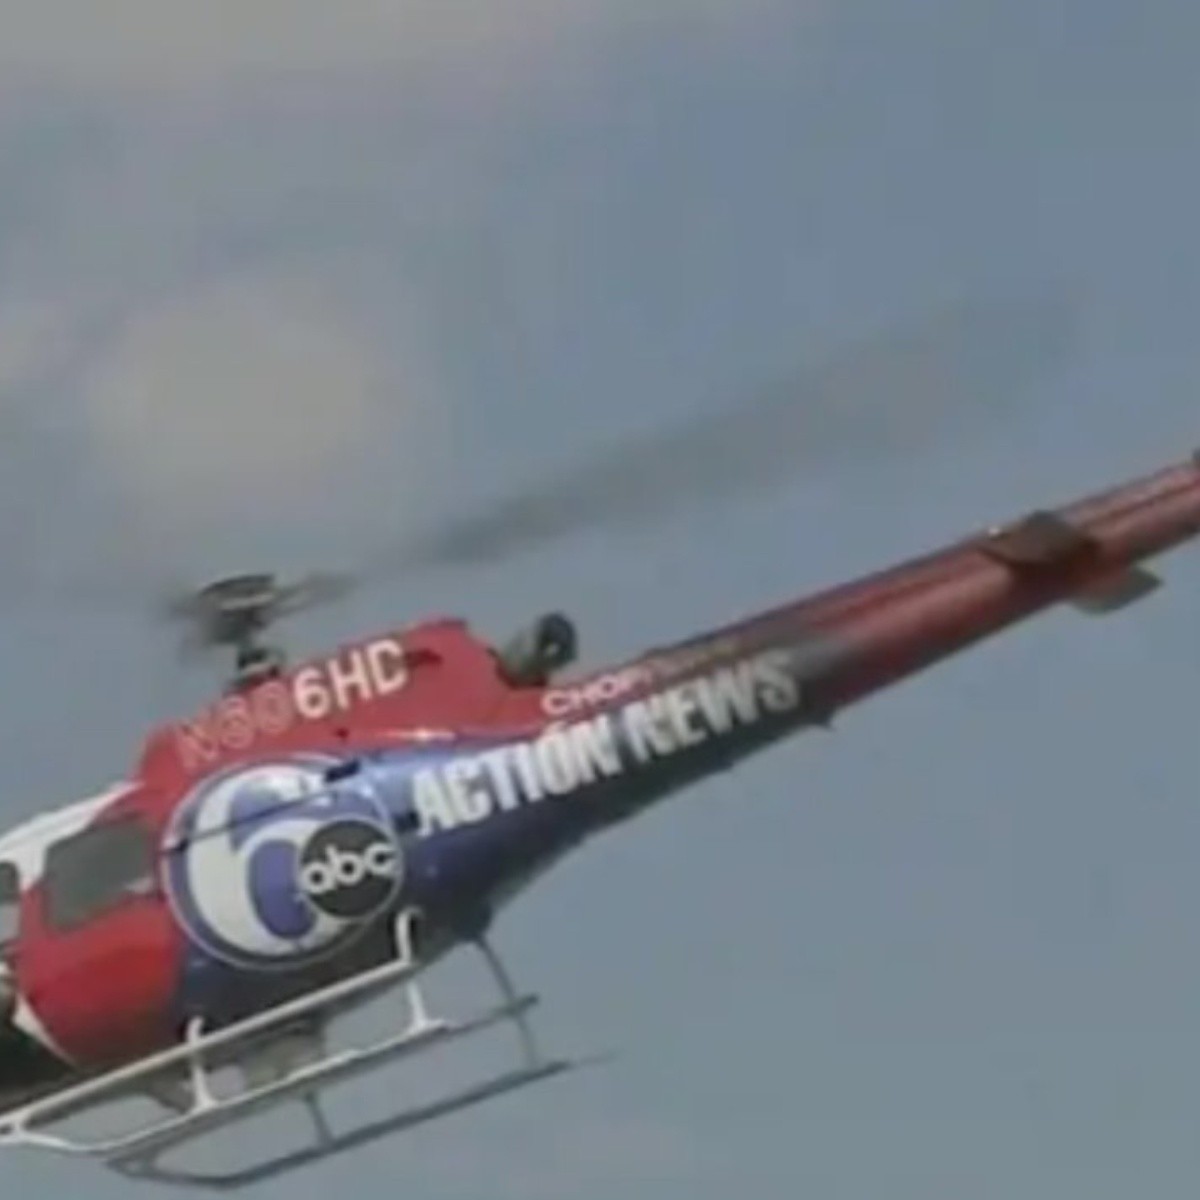 helicóptero de noticiero se estrella y mueren dos personas durante cubertura en vivo